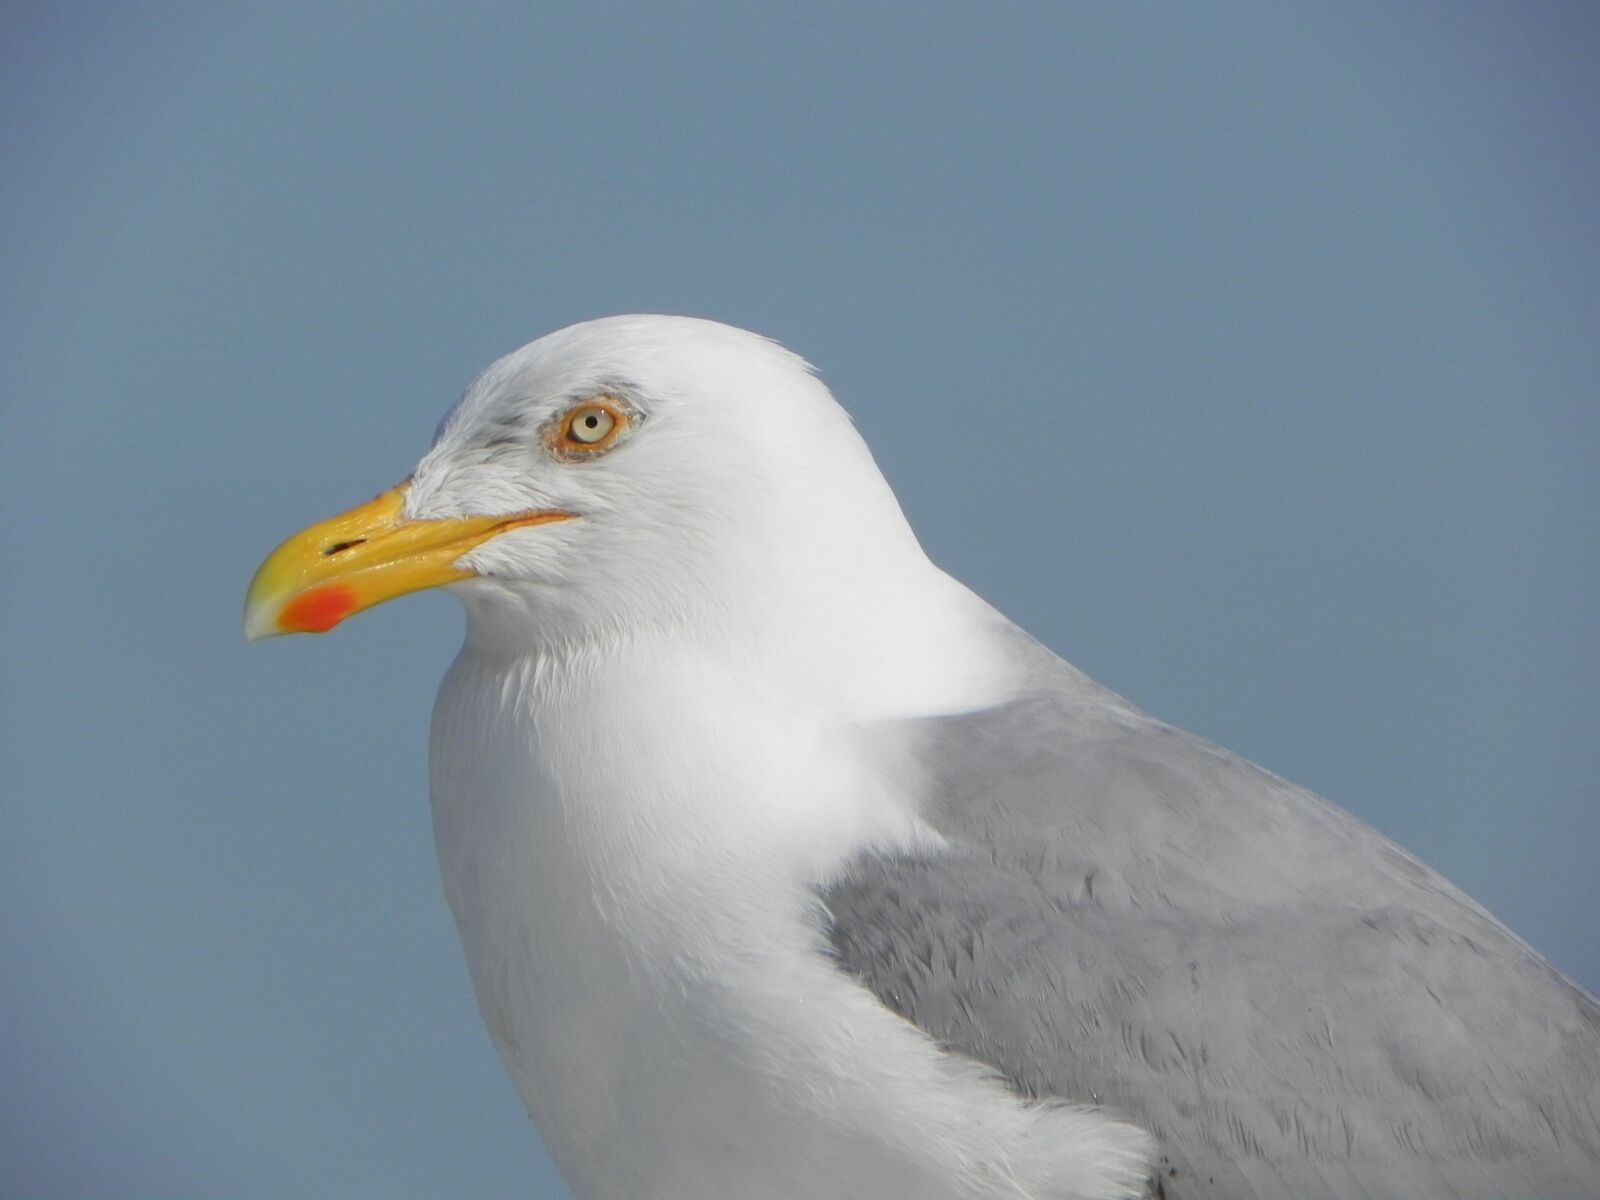 Nikon Coolpix P100 sample photo. Seagull, bird, nature photography